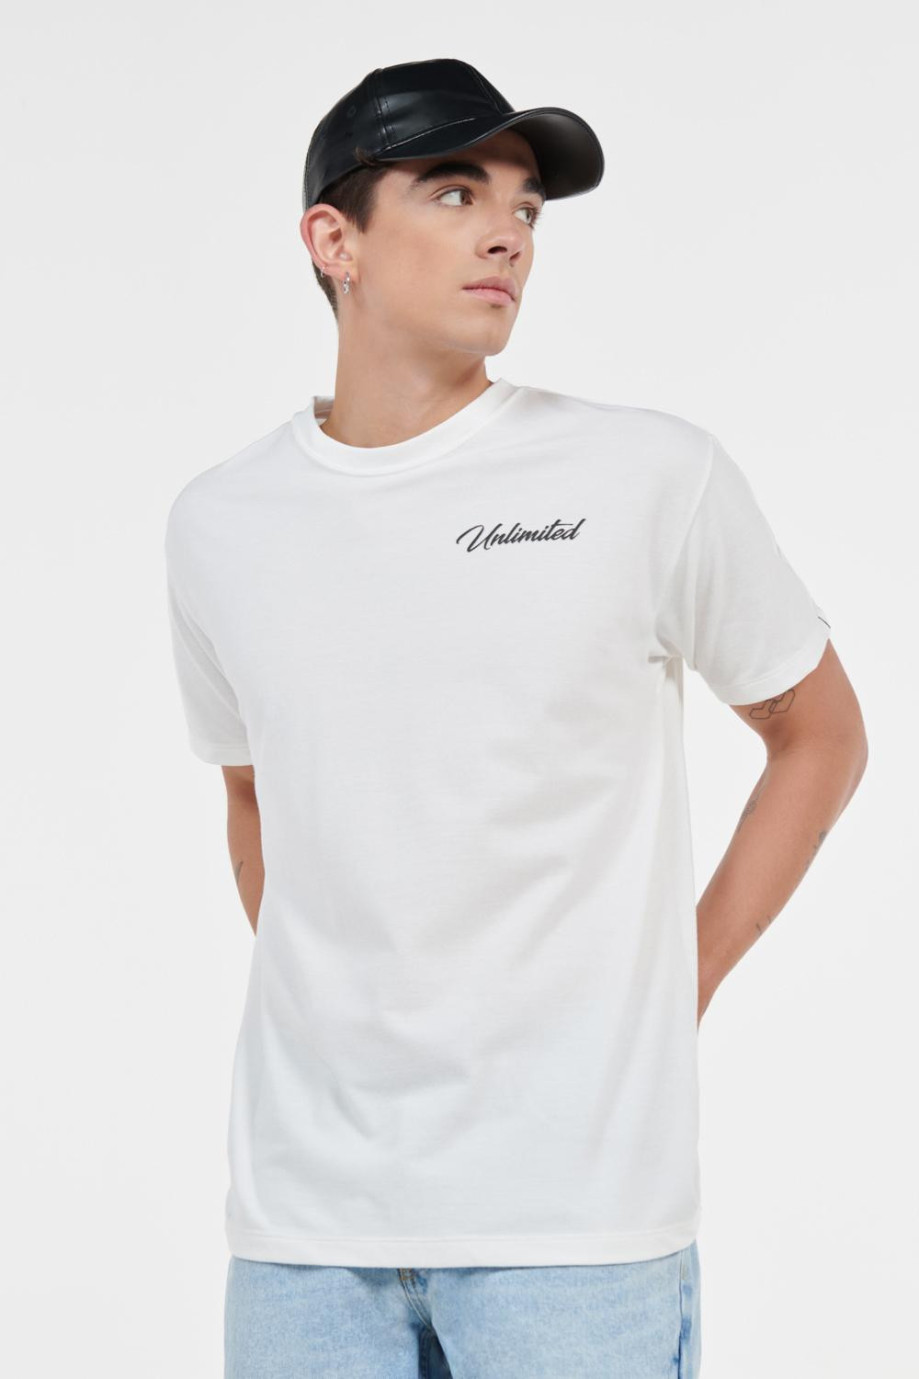 Camiseta unicolor oversize y texto estampado